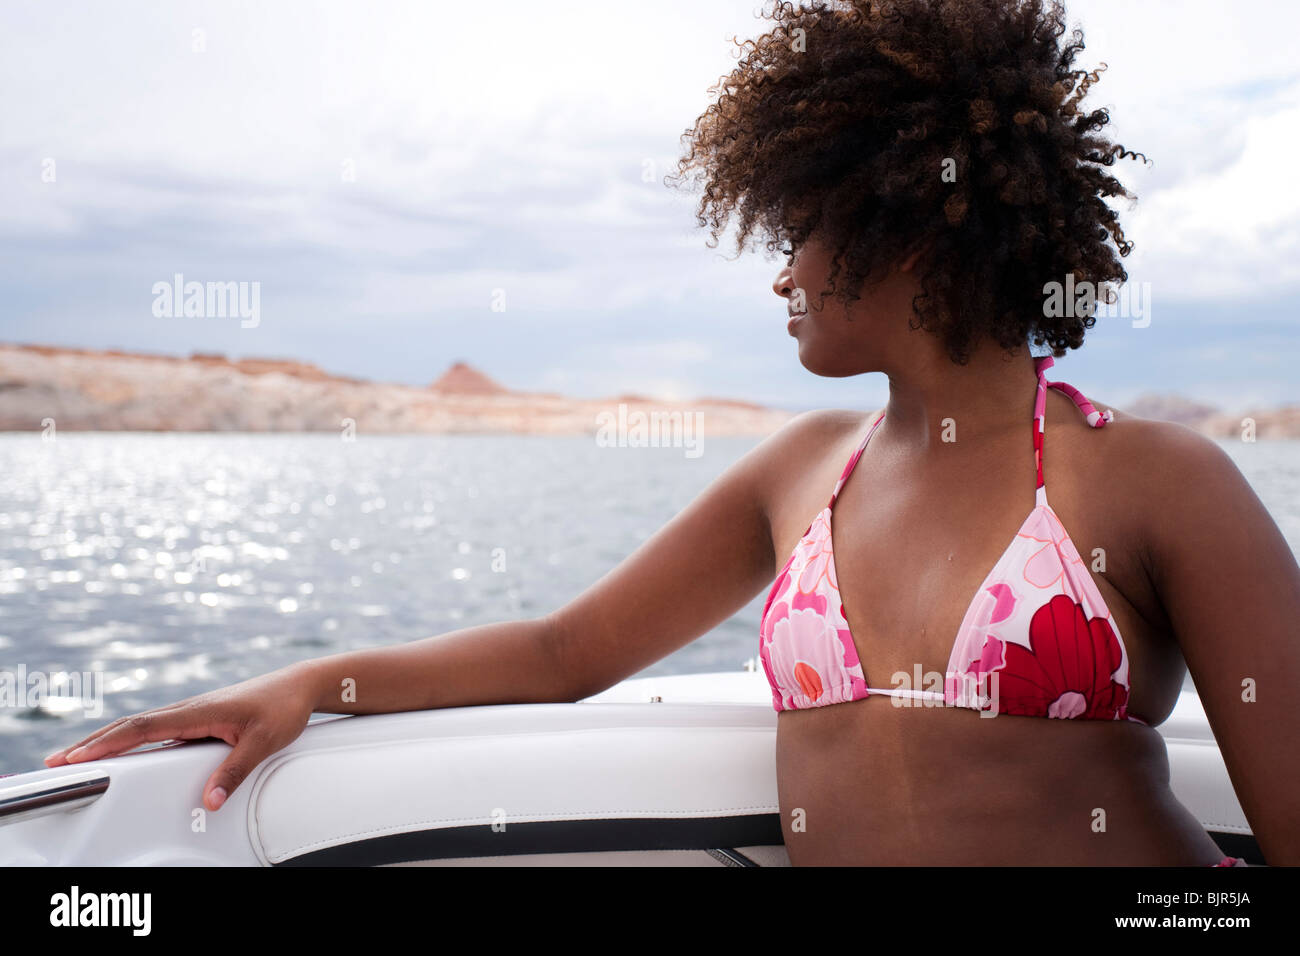 Woman in bikini on boat Stock Photo - Alamy